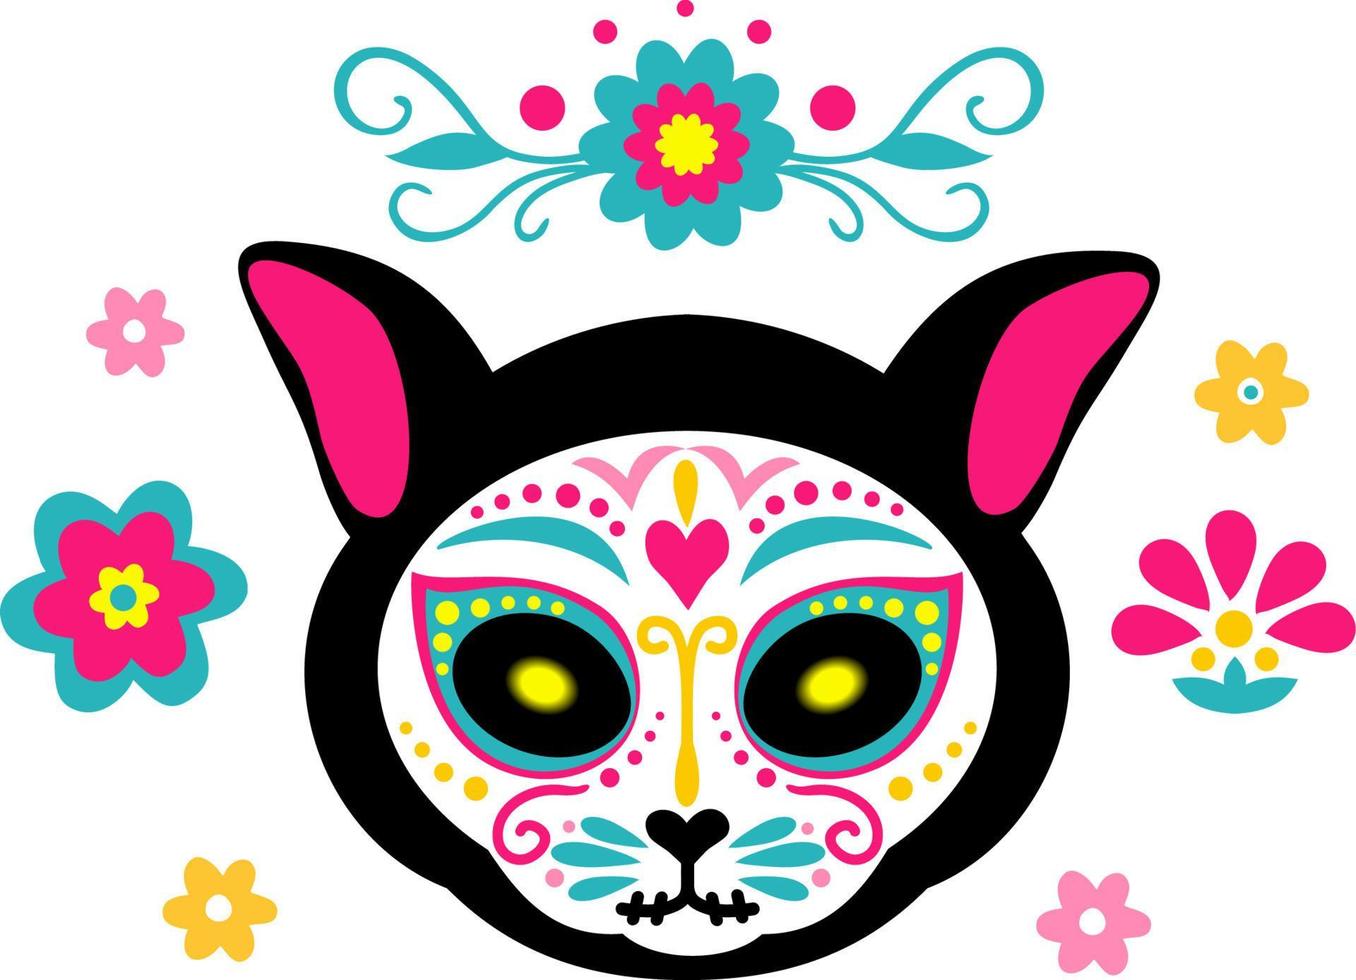 mexikansk död katt. kattskalle sockerhuvud färgglad semestervektorillustration för de dödas dag, ben skelett dia de los muertos husdjursfestteckningar vektor